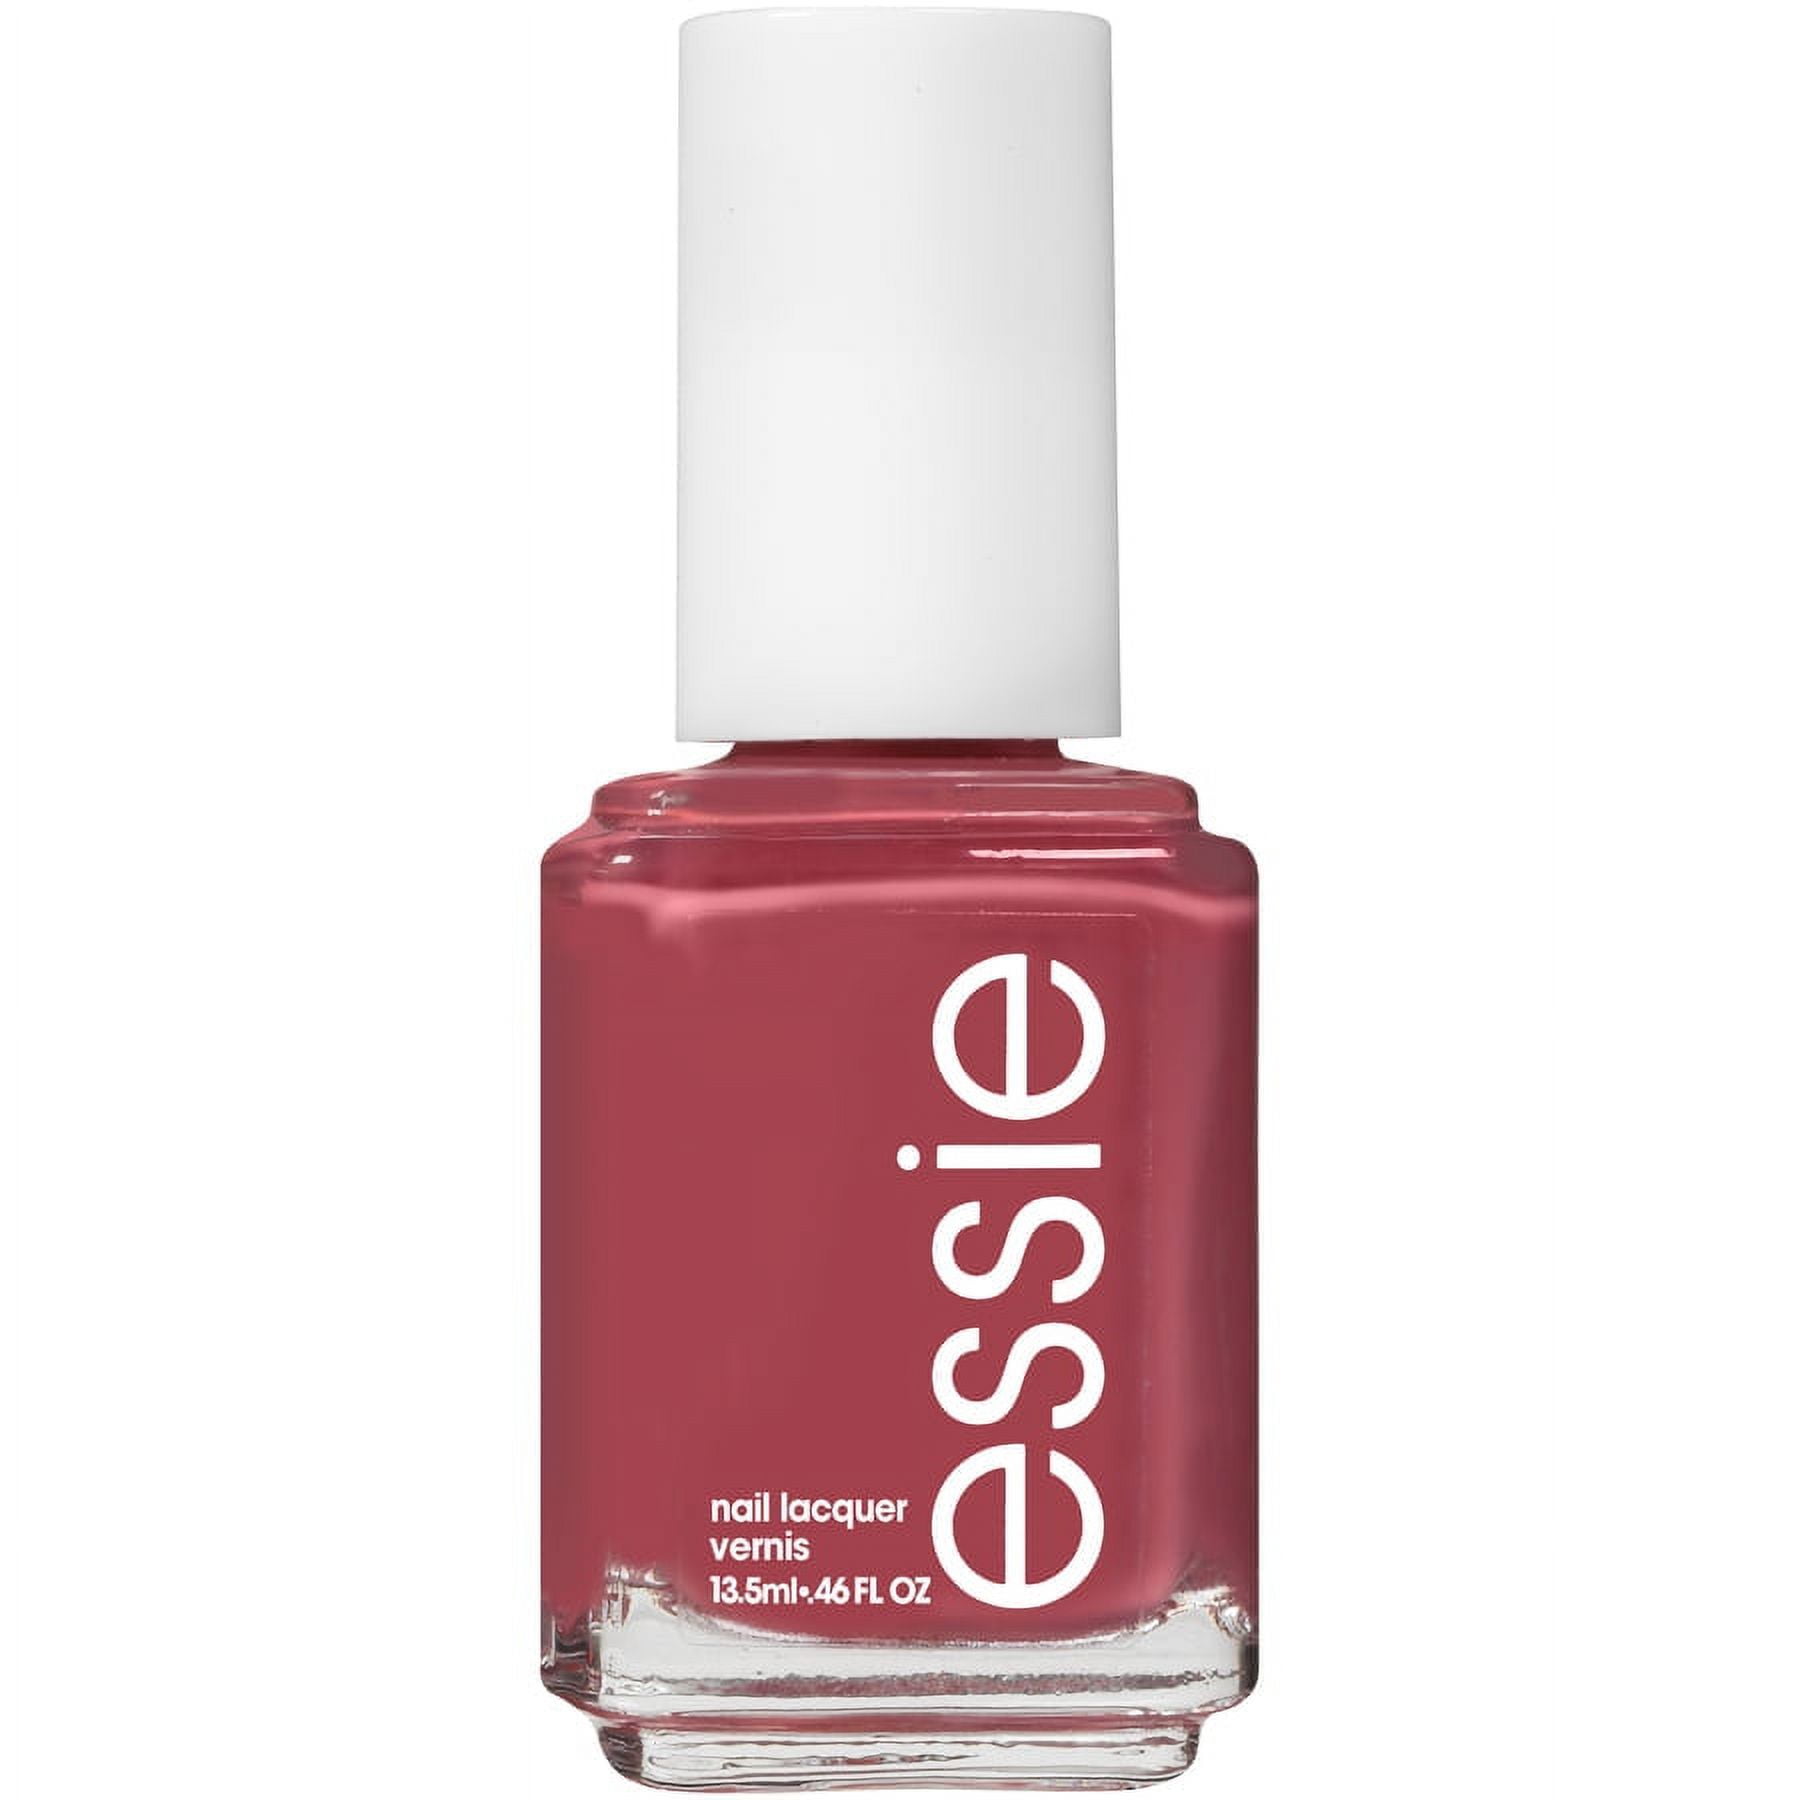 essie Salon Quality 8 0.46 fl Polish, Blush oz Bottle Free Nail Vegan Deep Pink